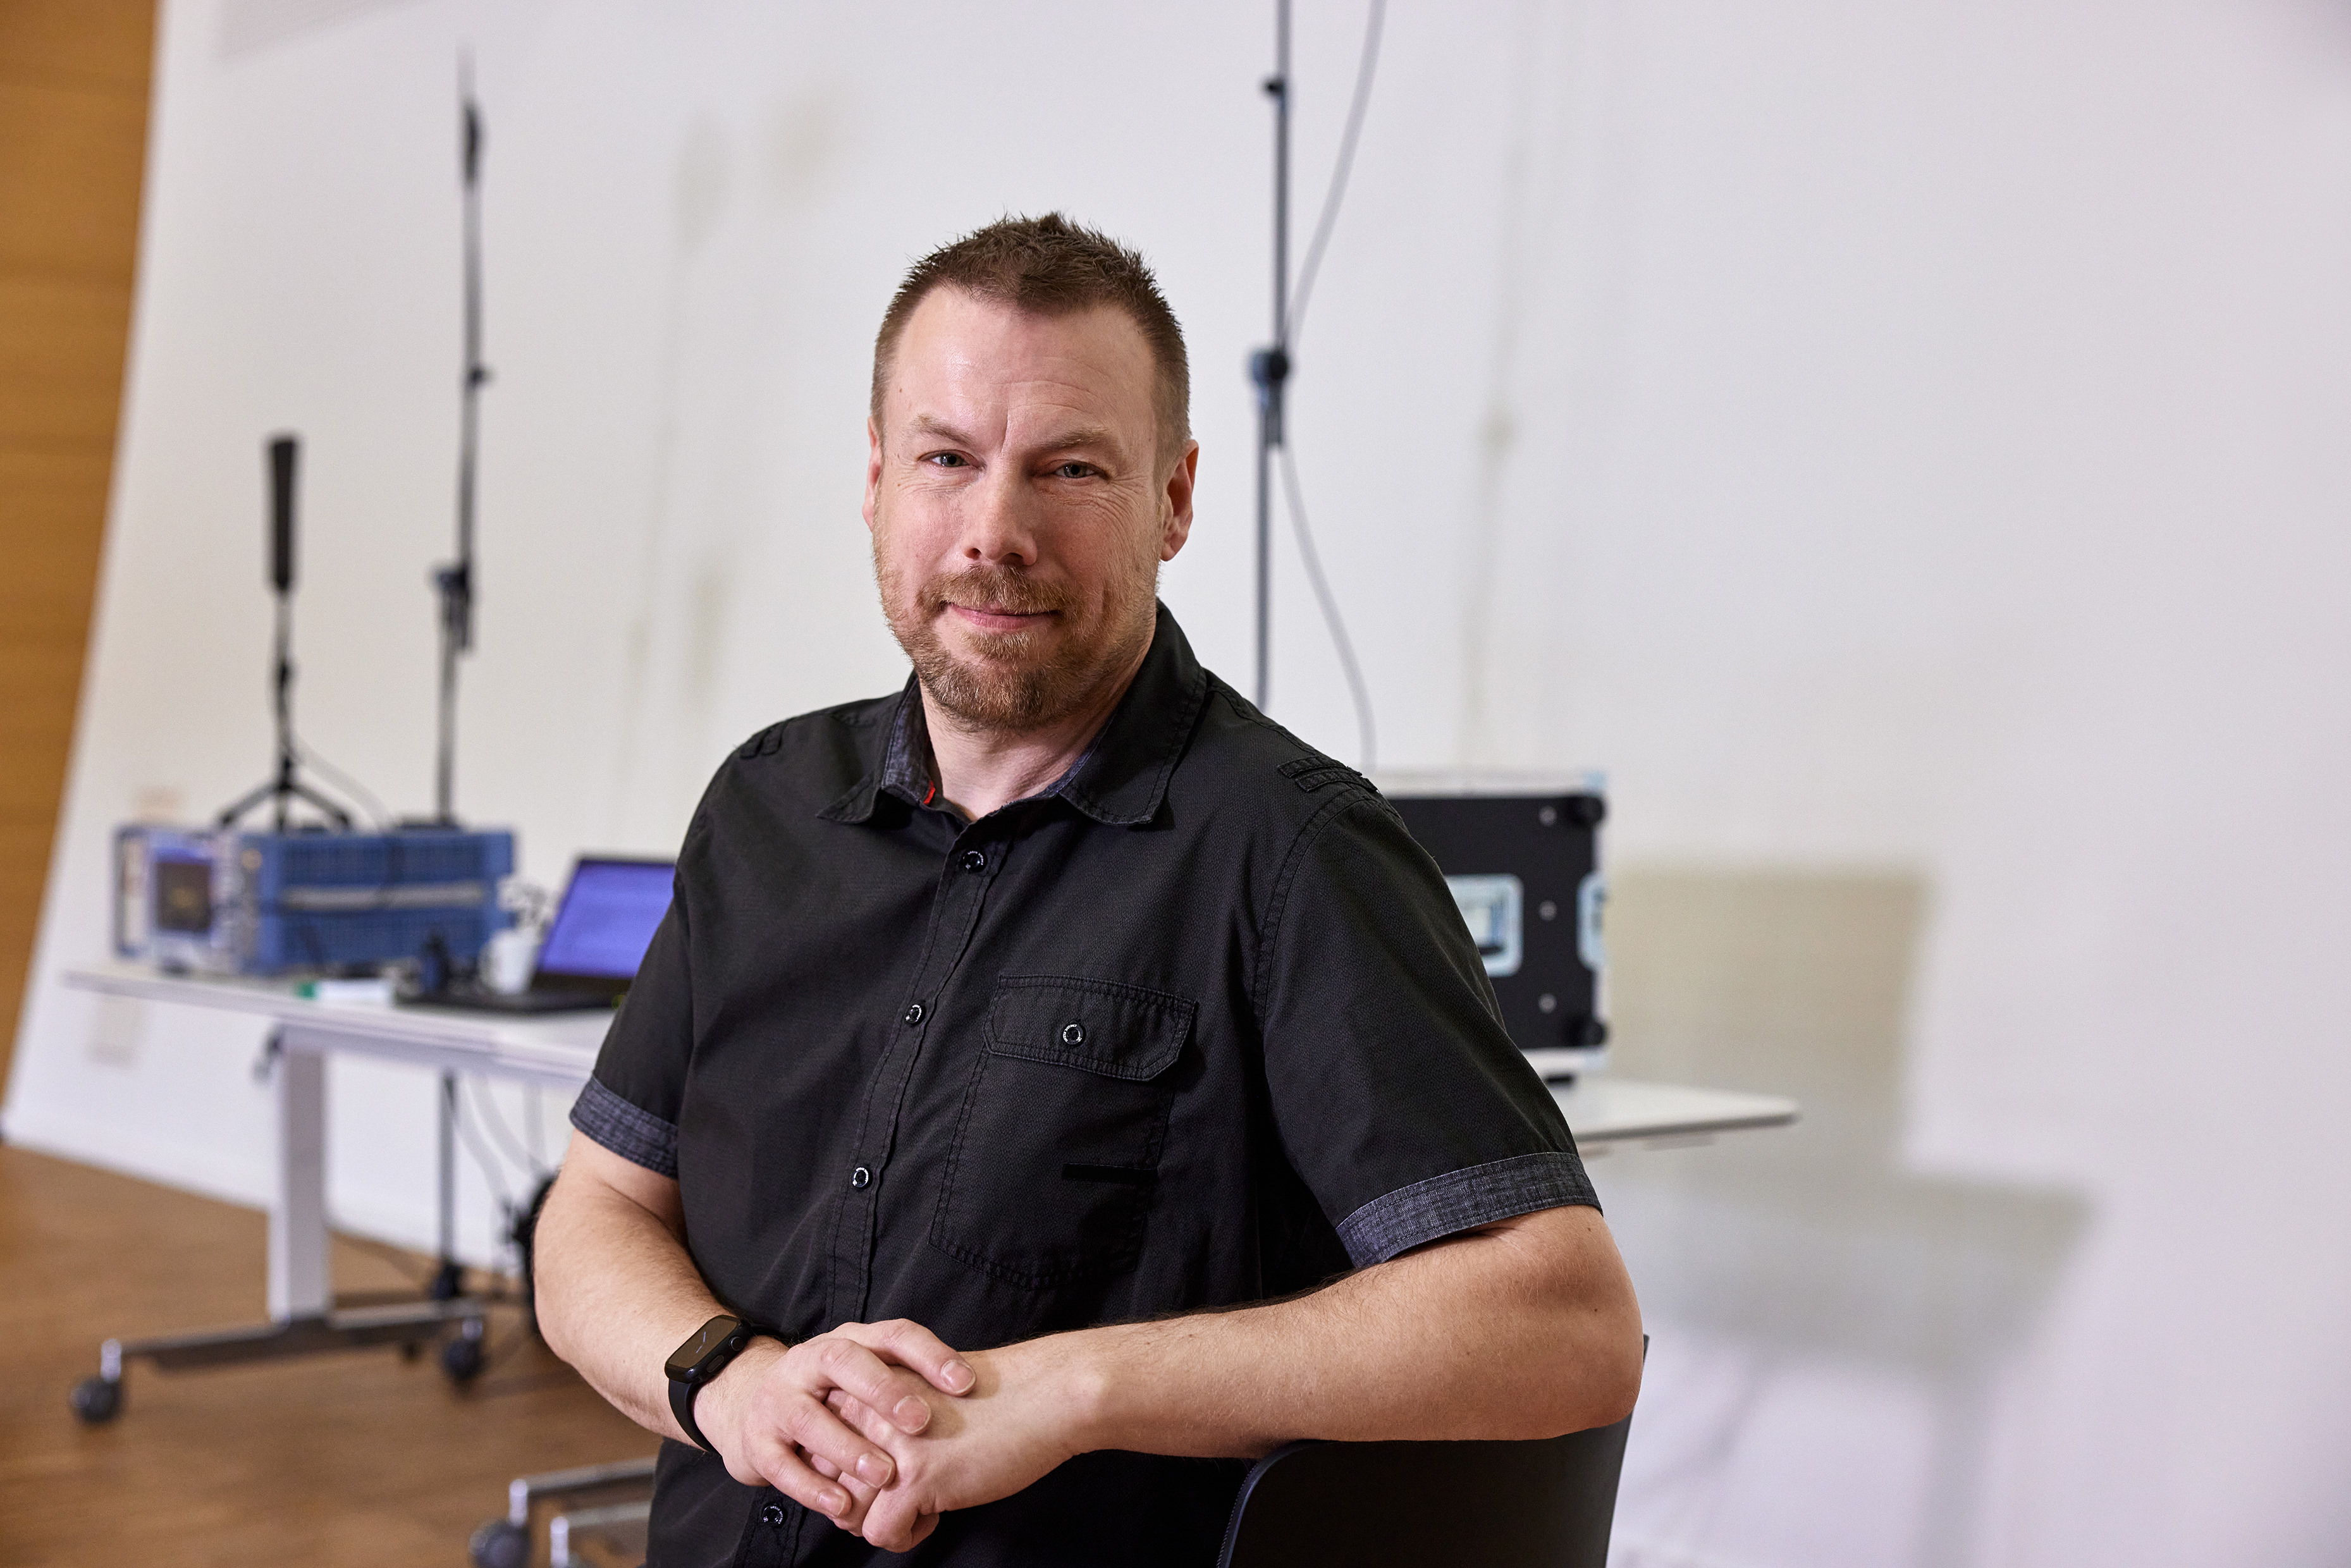 Jonas Naesby，森海塞尔技术应用工程师，同时还是其创办的频率协调公司所有人